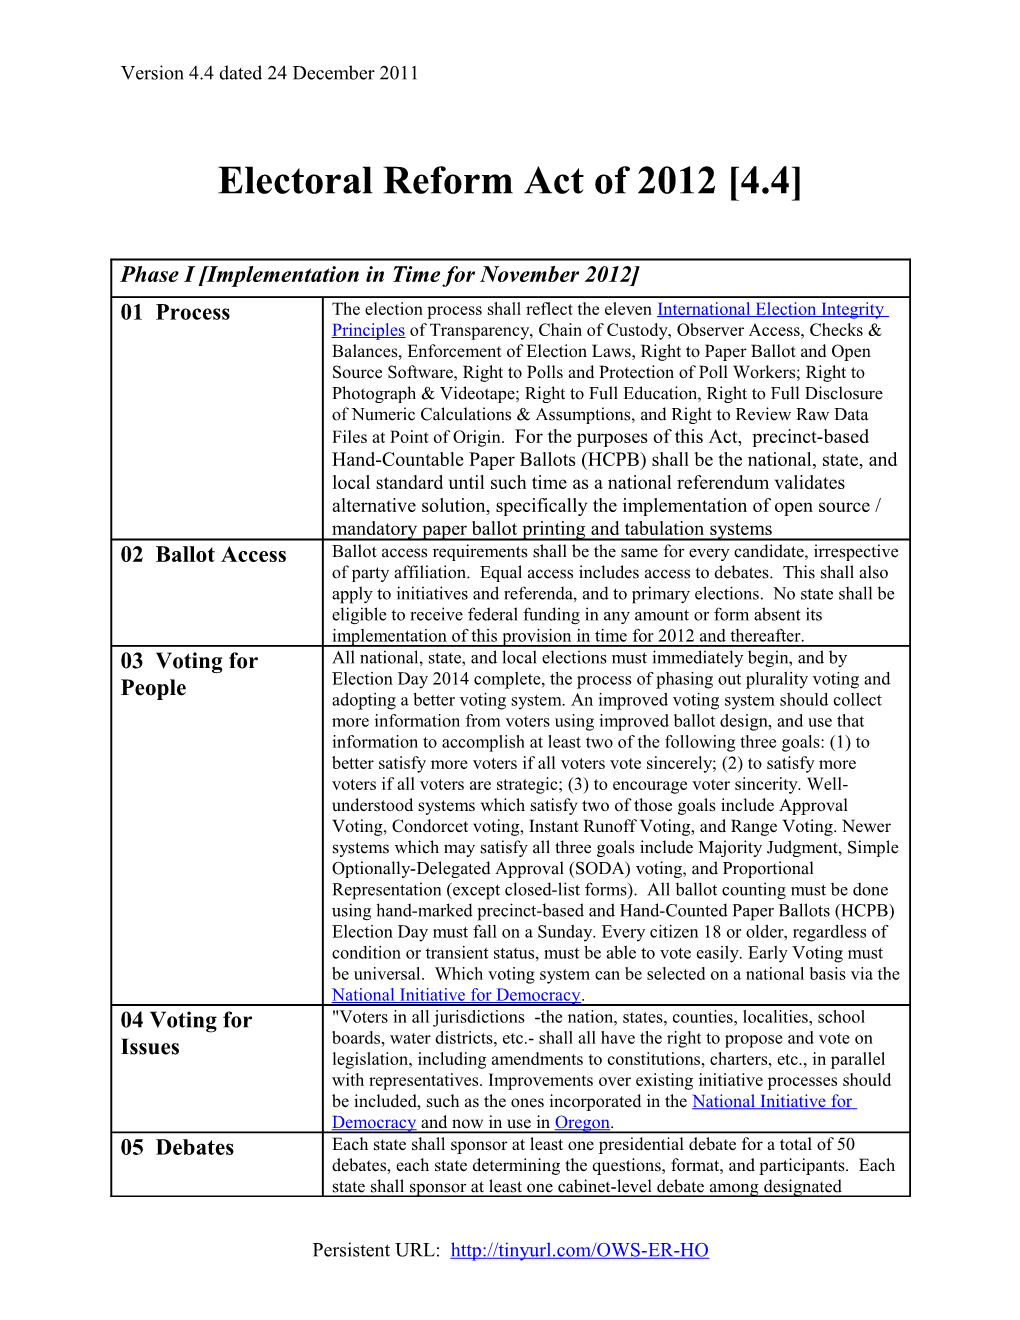 Electoral Reform Act of 2012 4.4